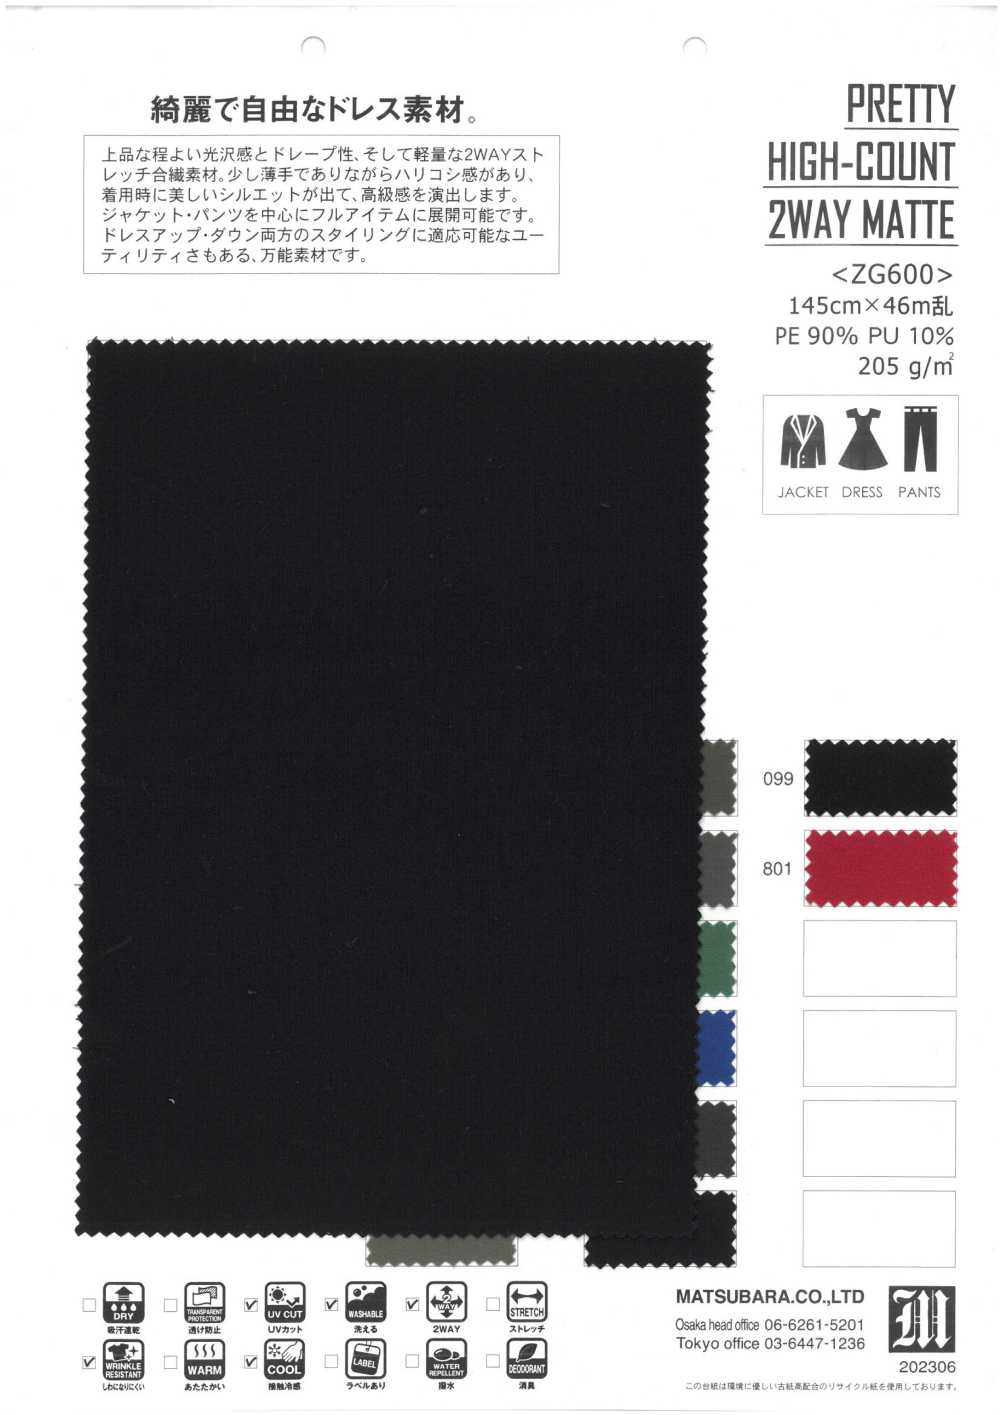 ZG600 BONITO MATE DE 2 VÍAS DE ALTA CONTENCIÓN[Fabrica Textil] Matsubara